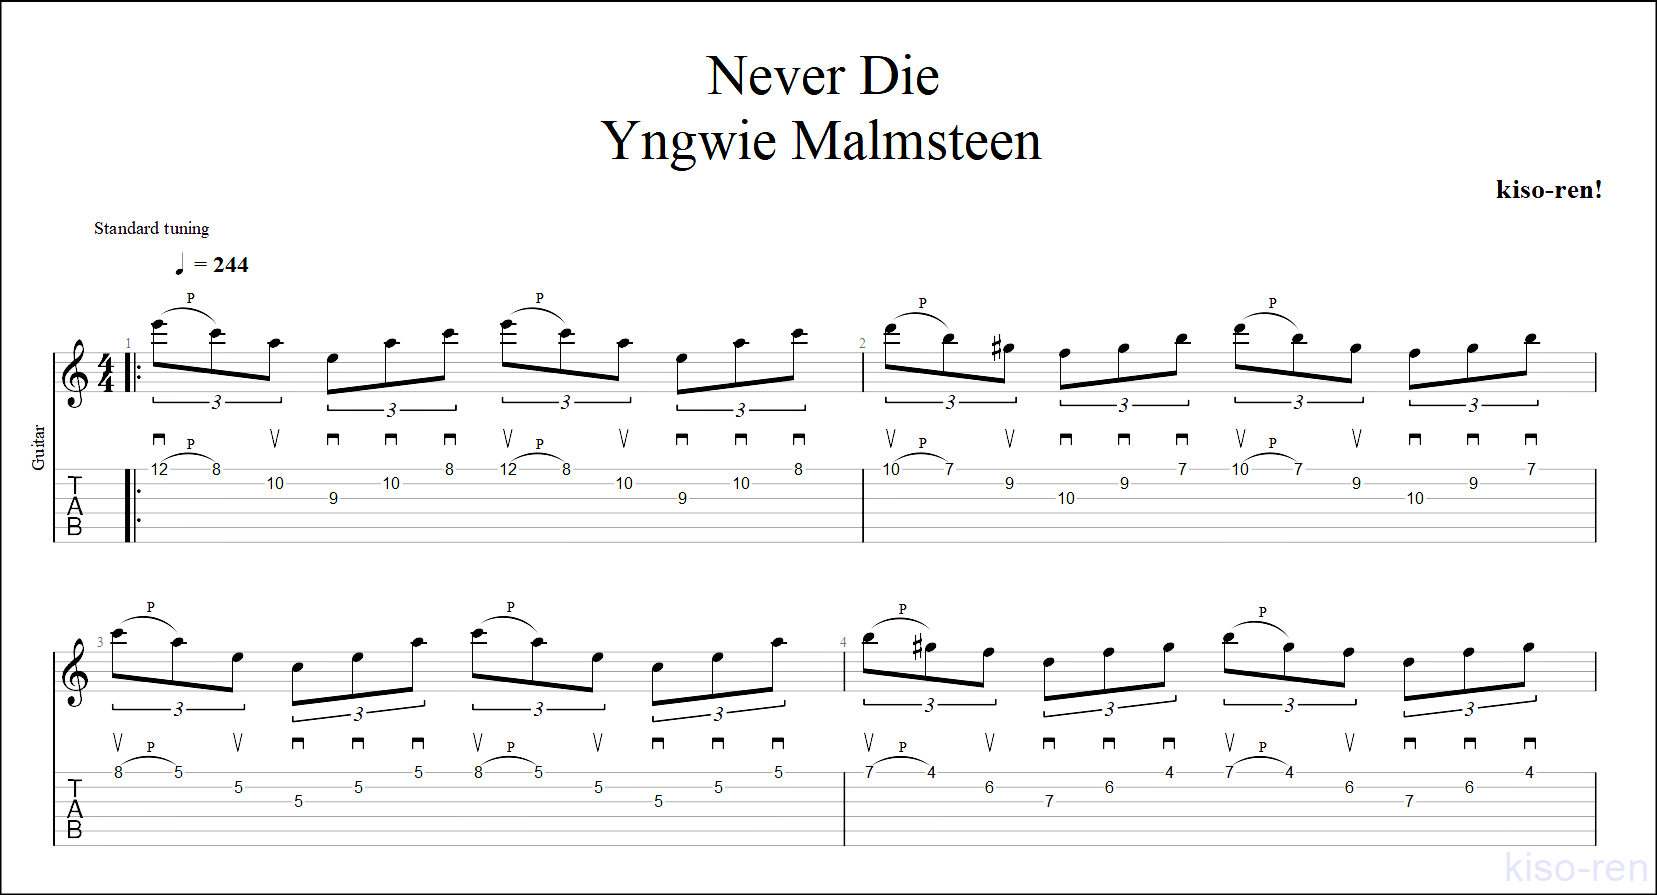 TAB譜 Never Dieのスウィープピッキングが絶対弾ける練習方法。TAB【イングヴェイ・マルムスティーン 動画ピッキング基礎練習】